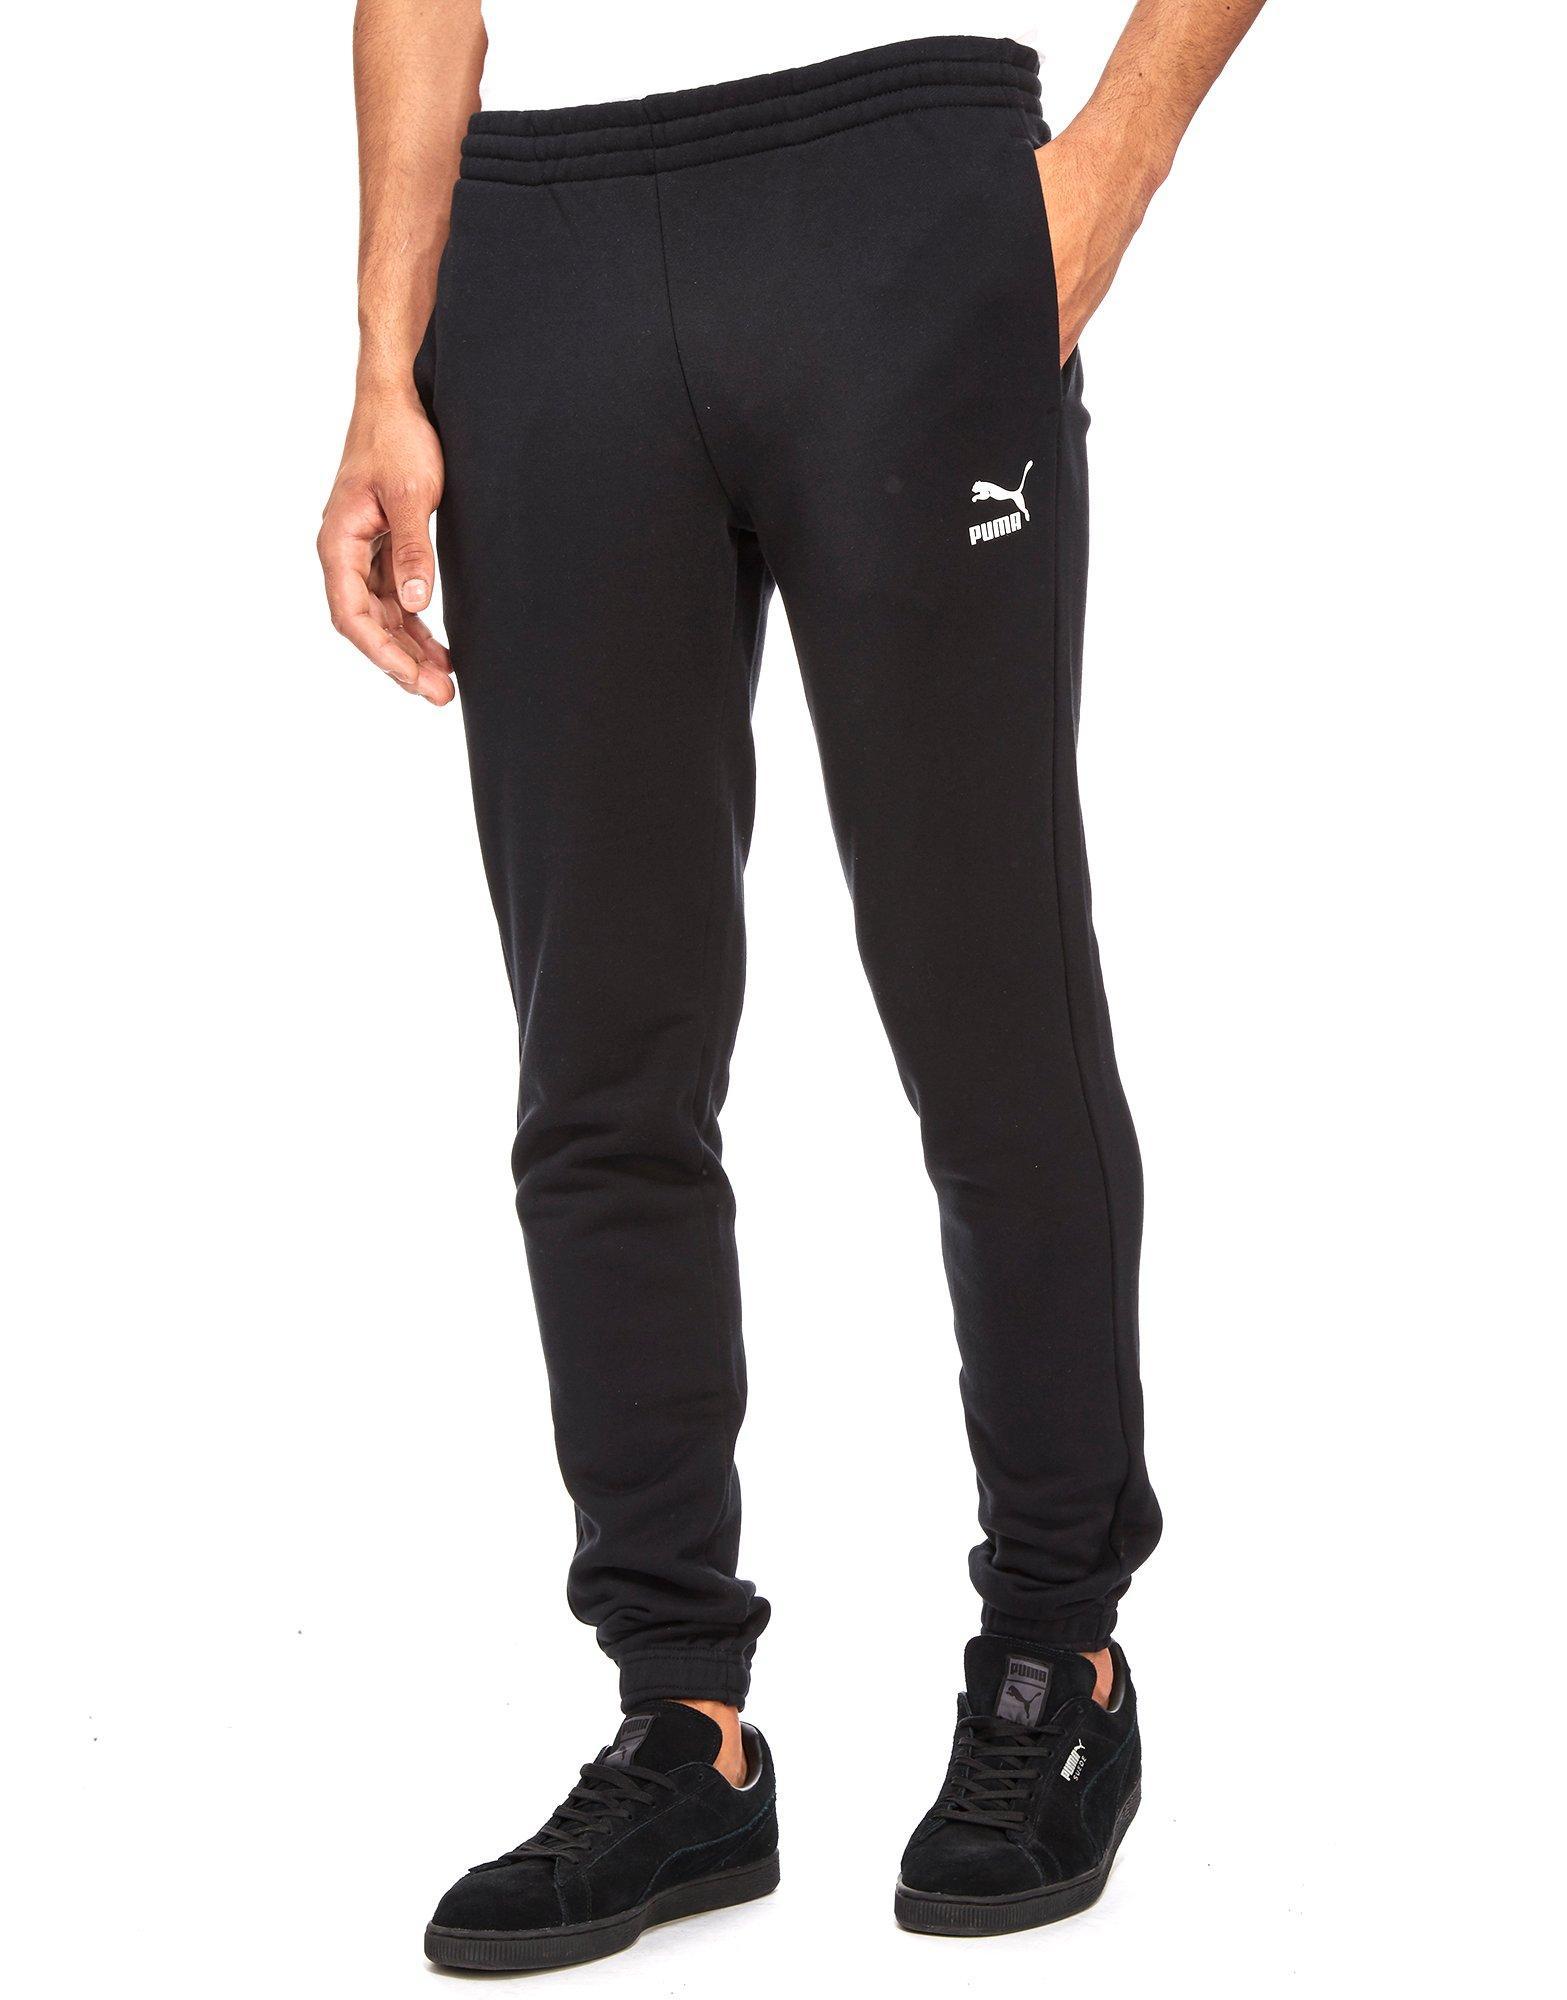 Lyst - Puma Archive Logo Fleece Pants in Black for Men